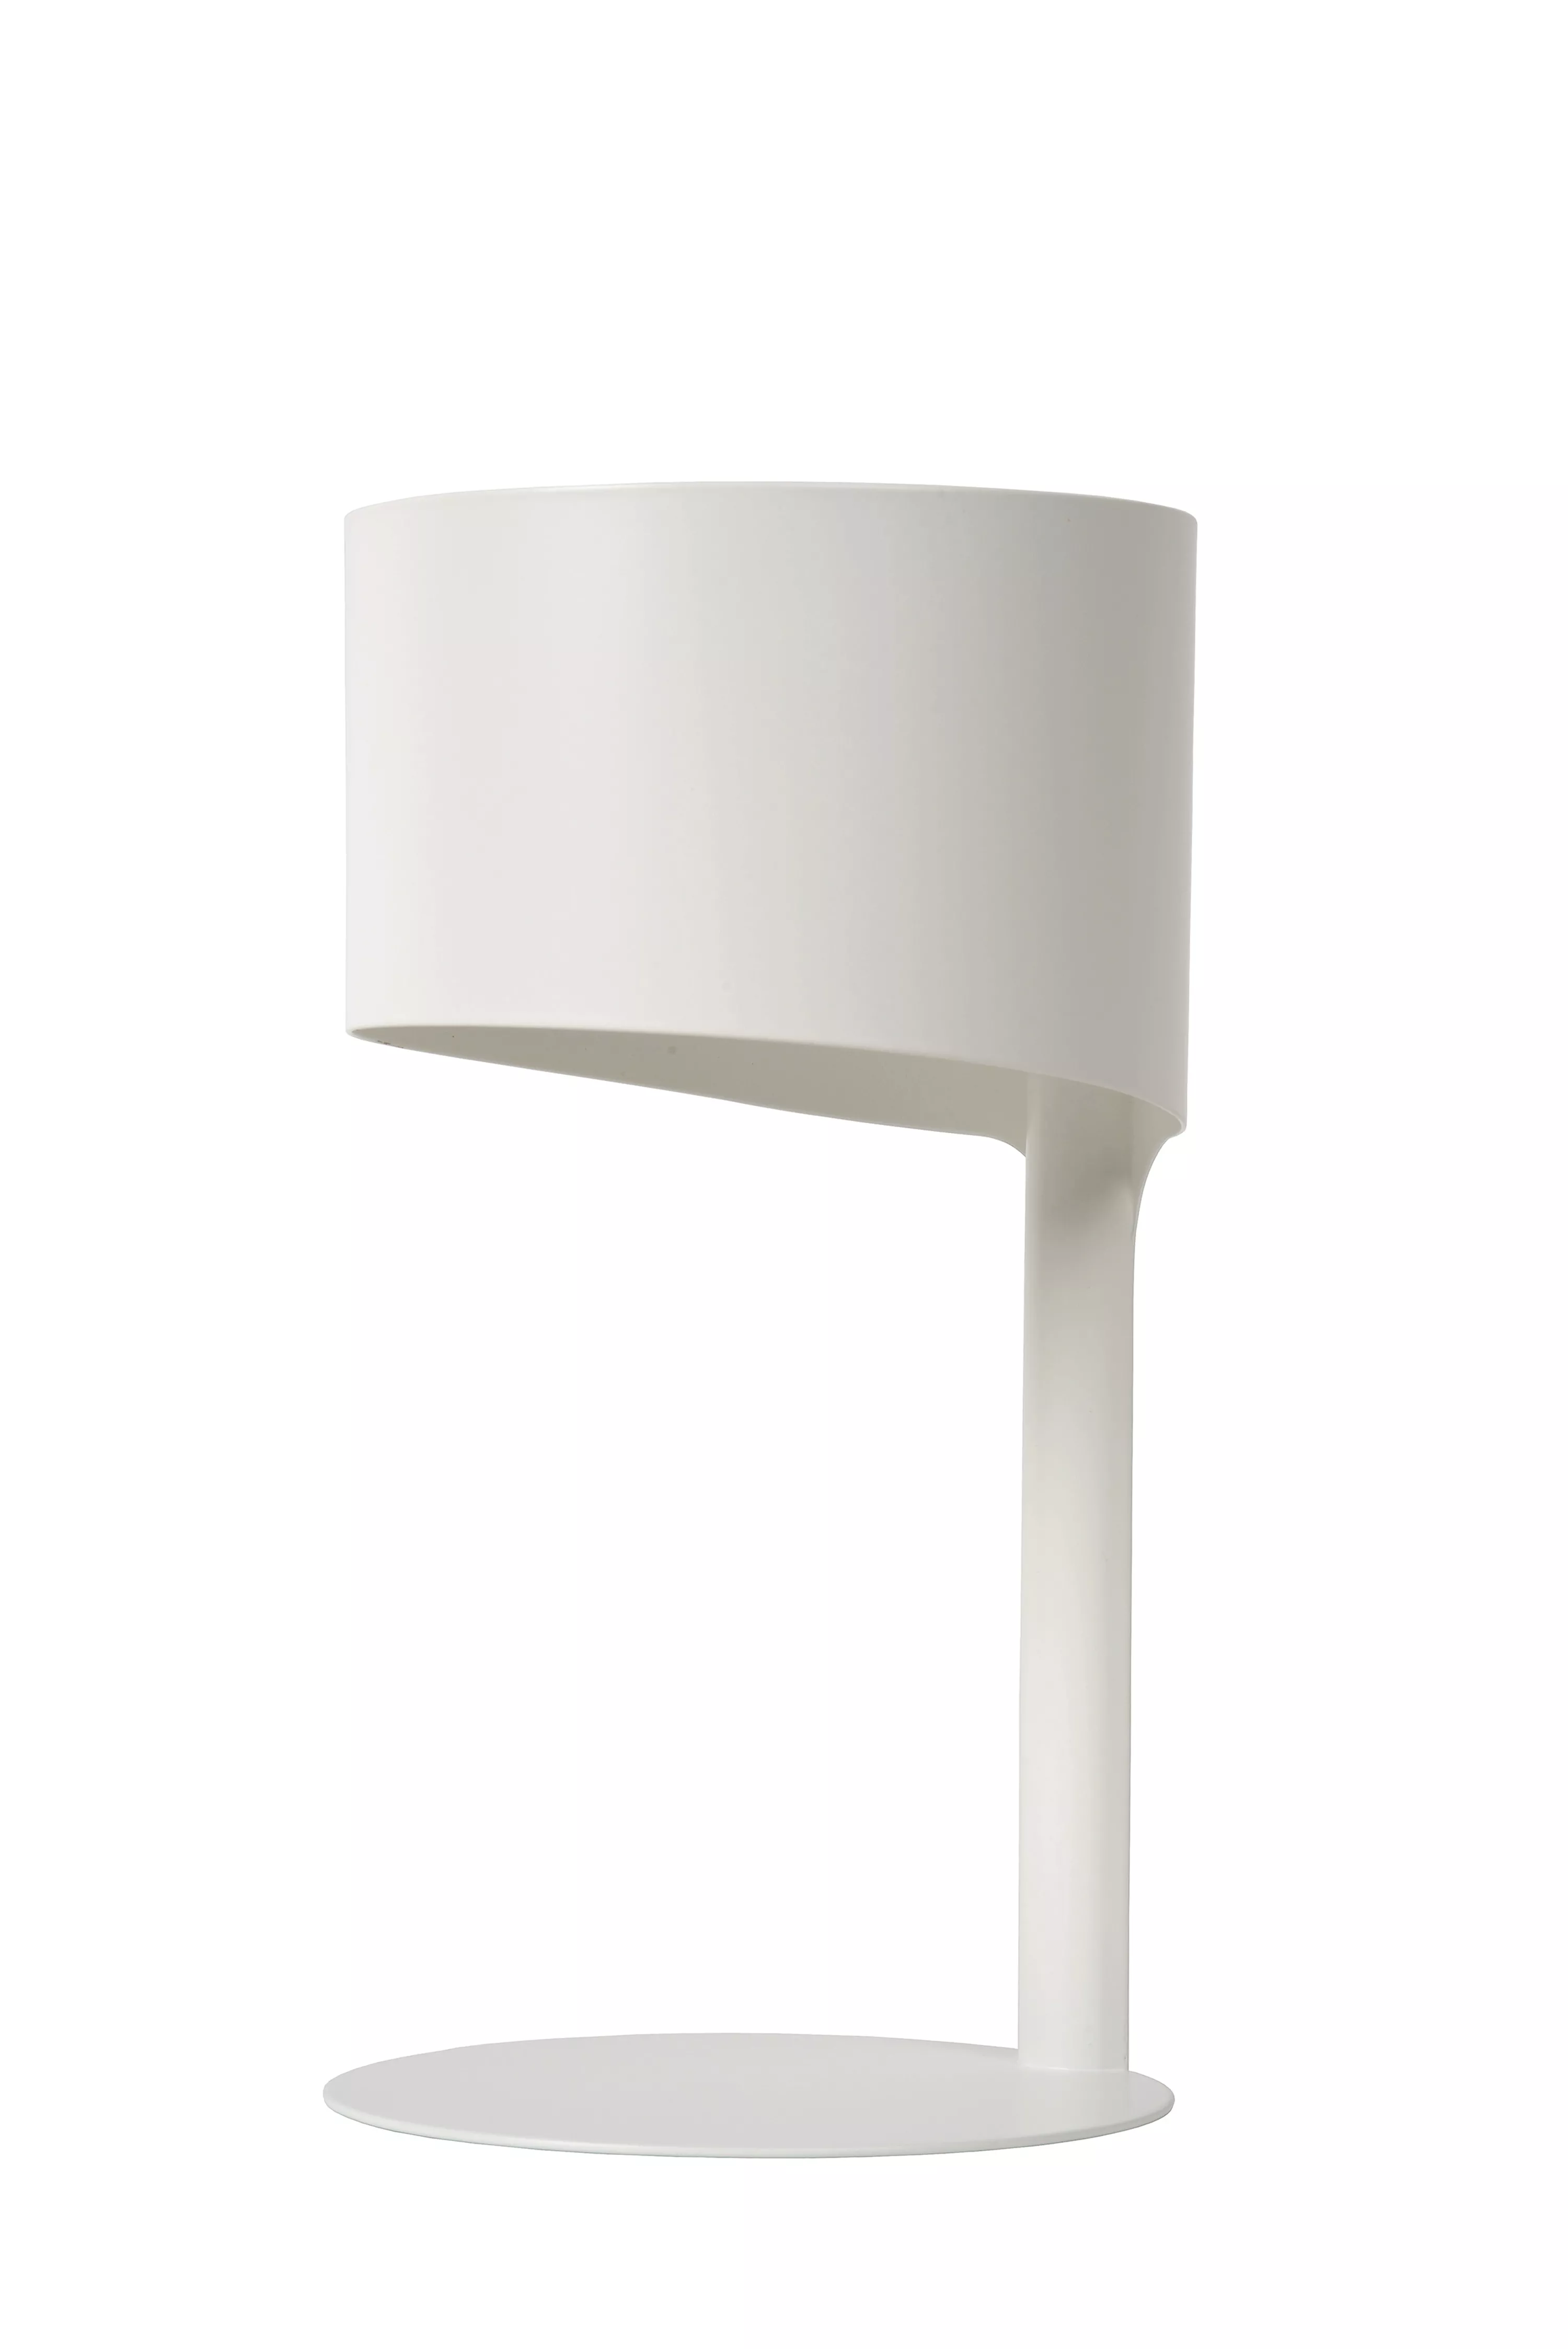 Stolová lampička Knulle spája jednoduchosť a funkčnosť, je dostupná v bielom a čiernom variante, ideálna do kútika na čítanie.